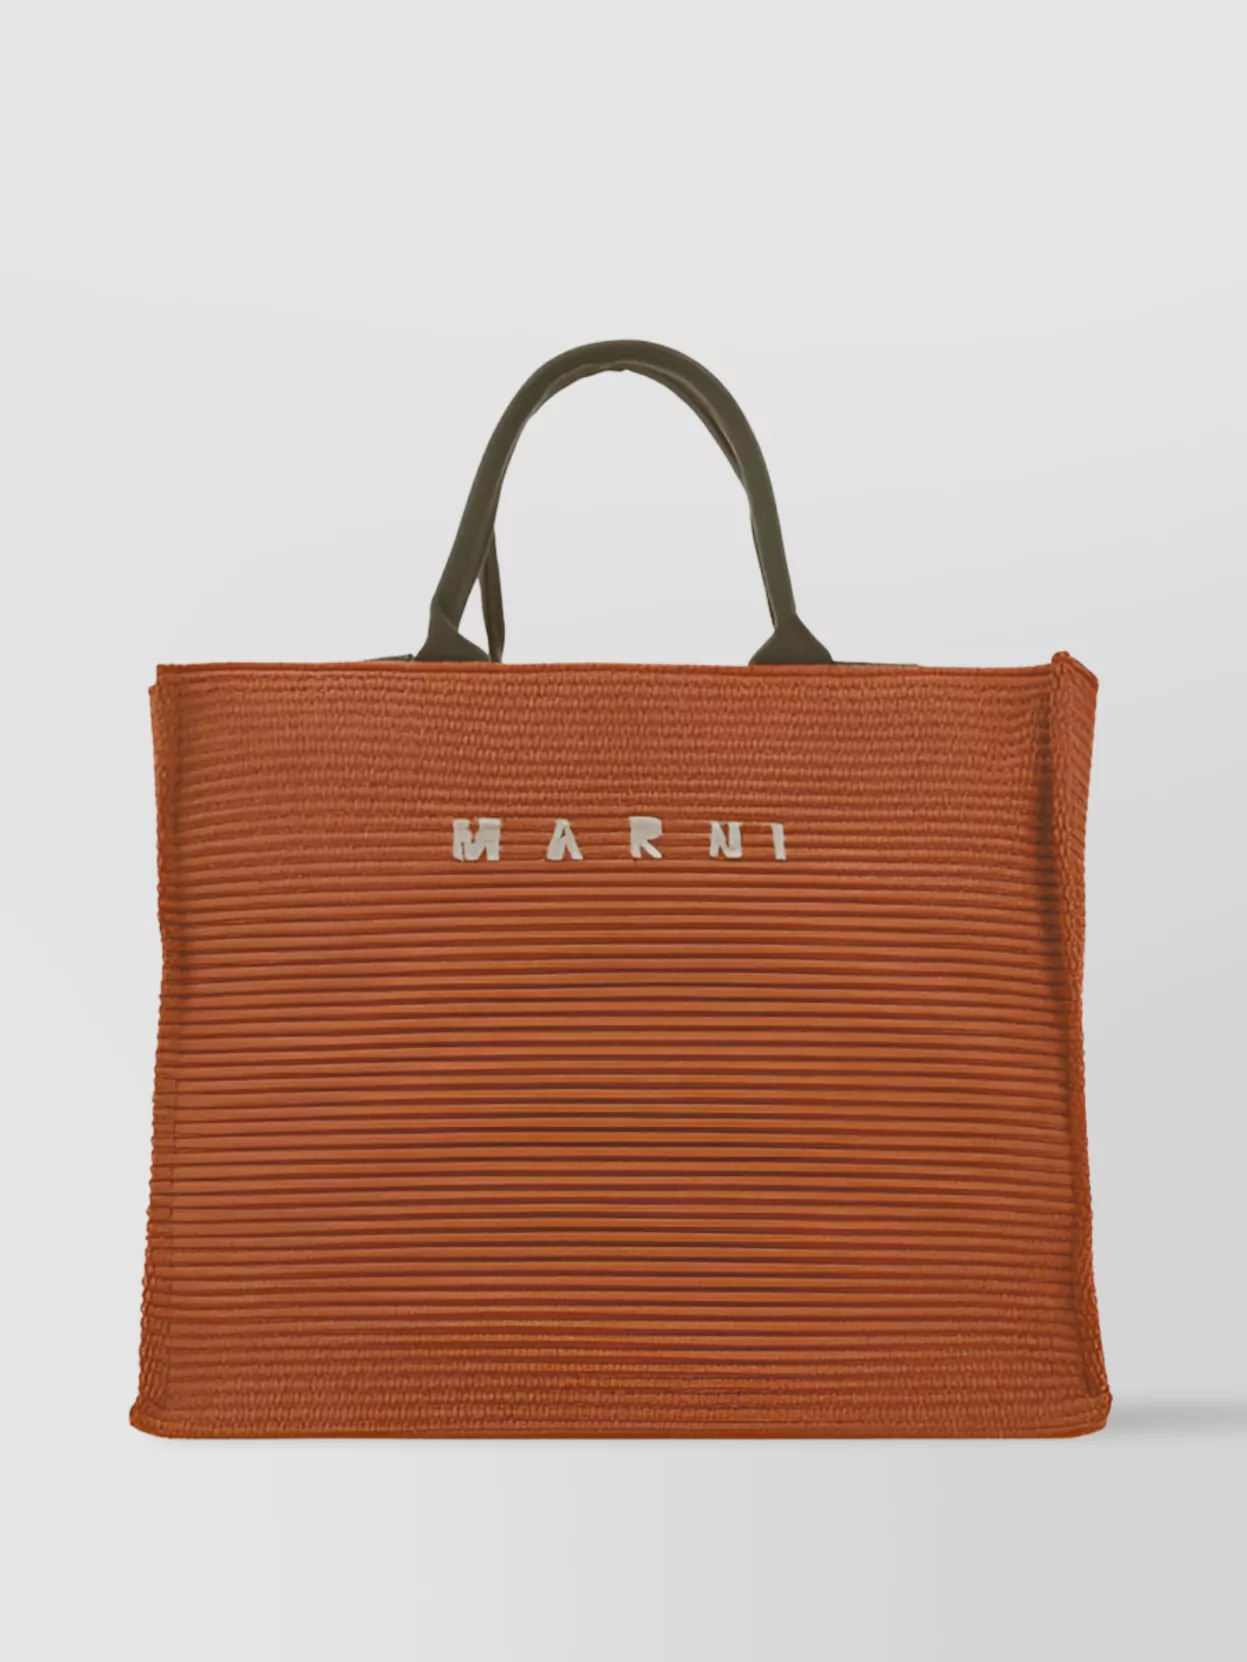 Marni Tote Bag In Orange